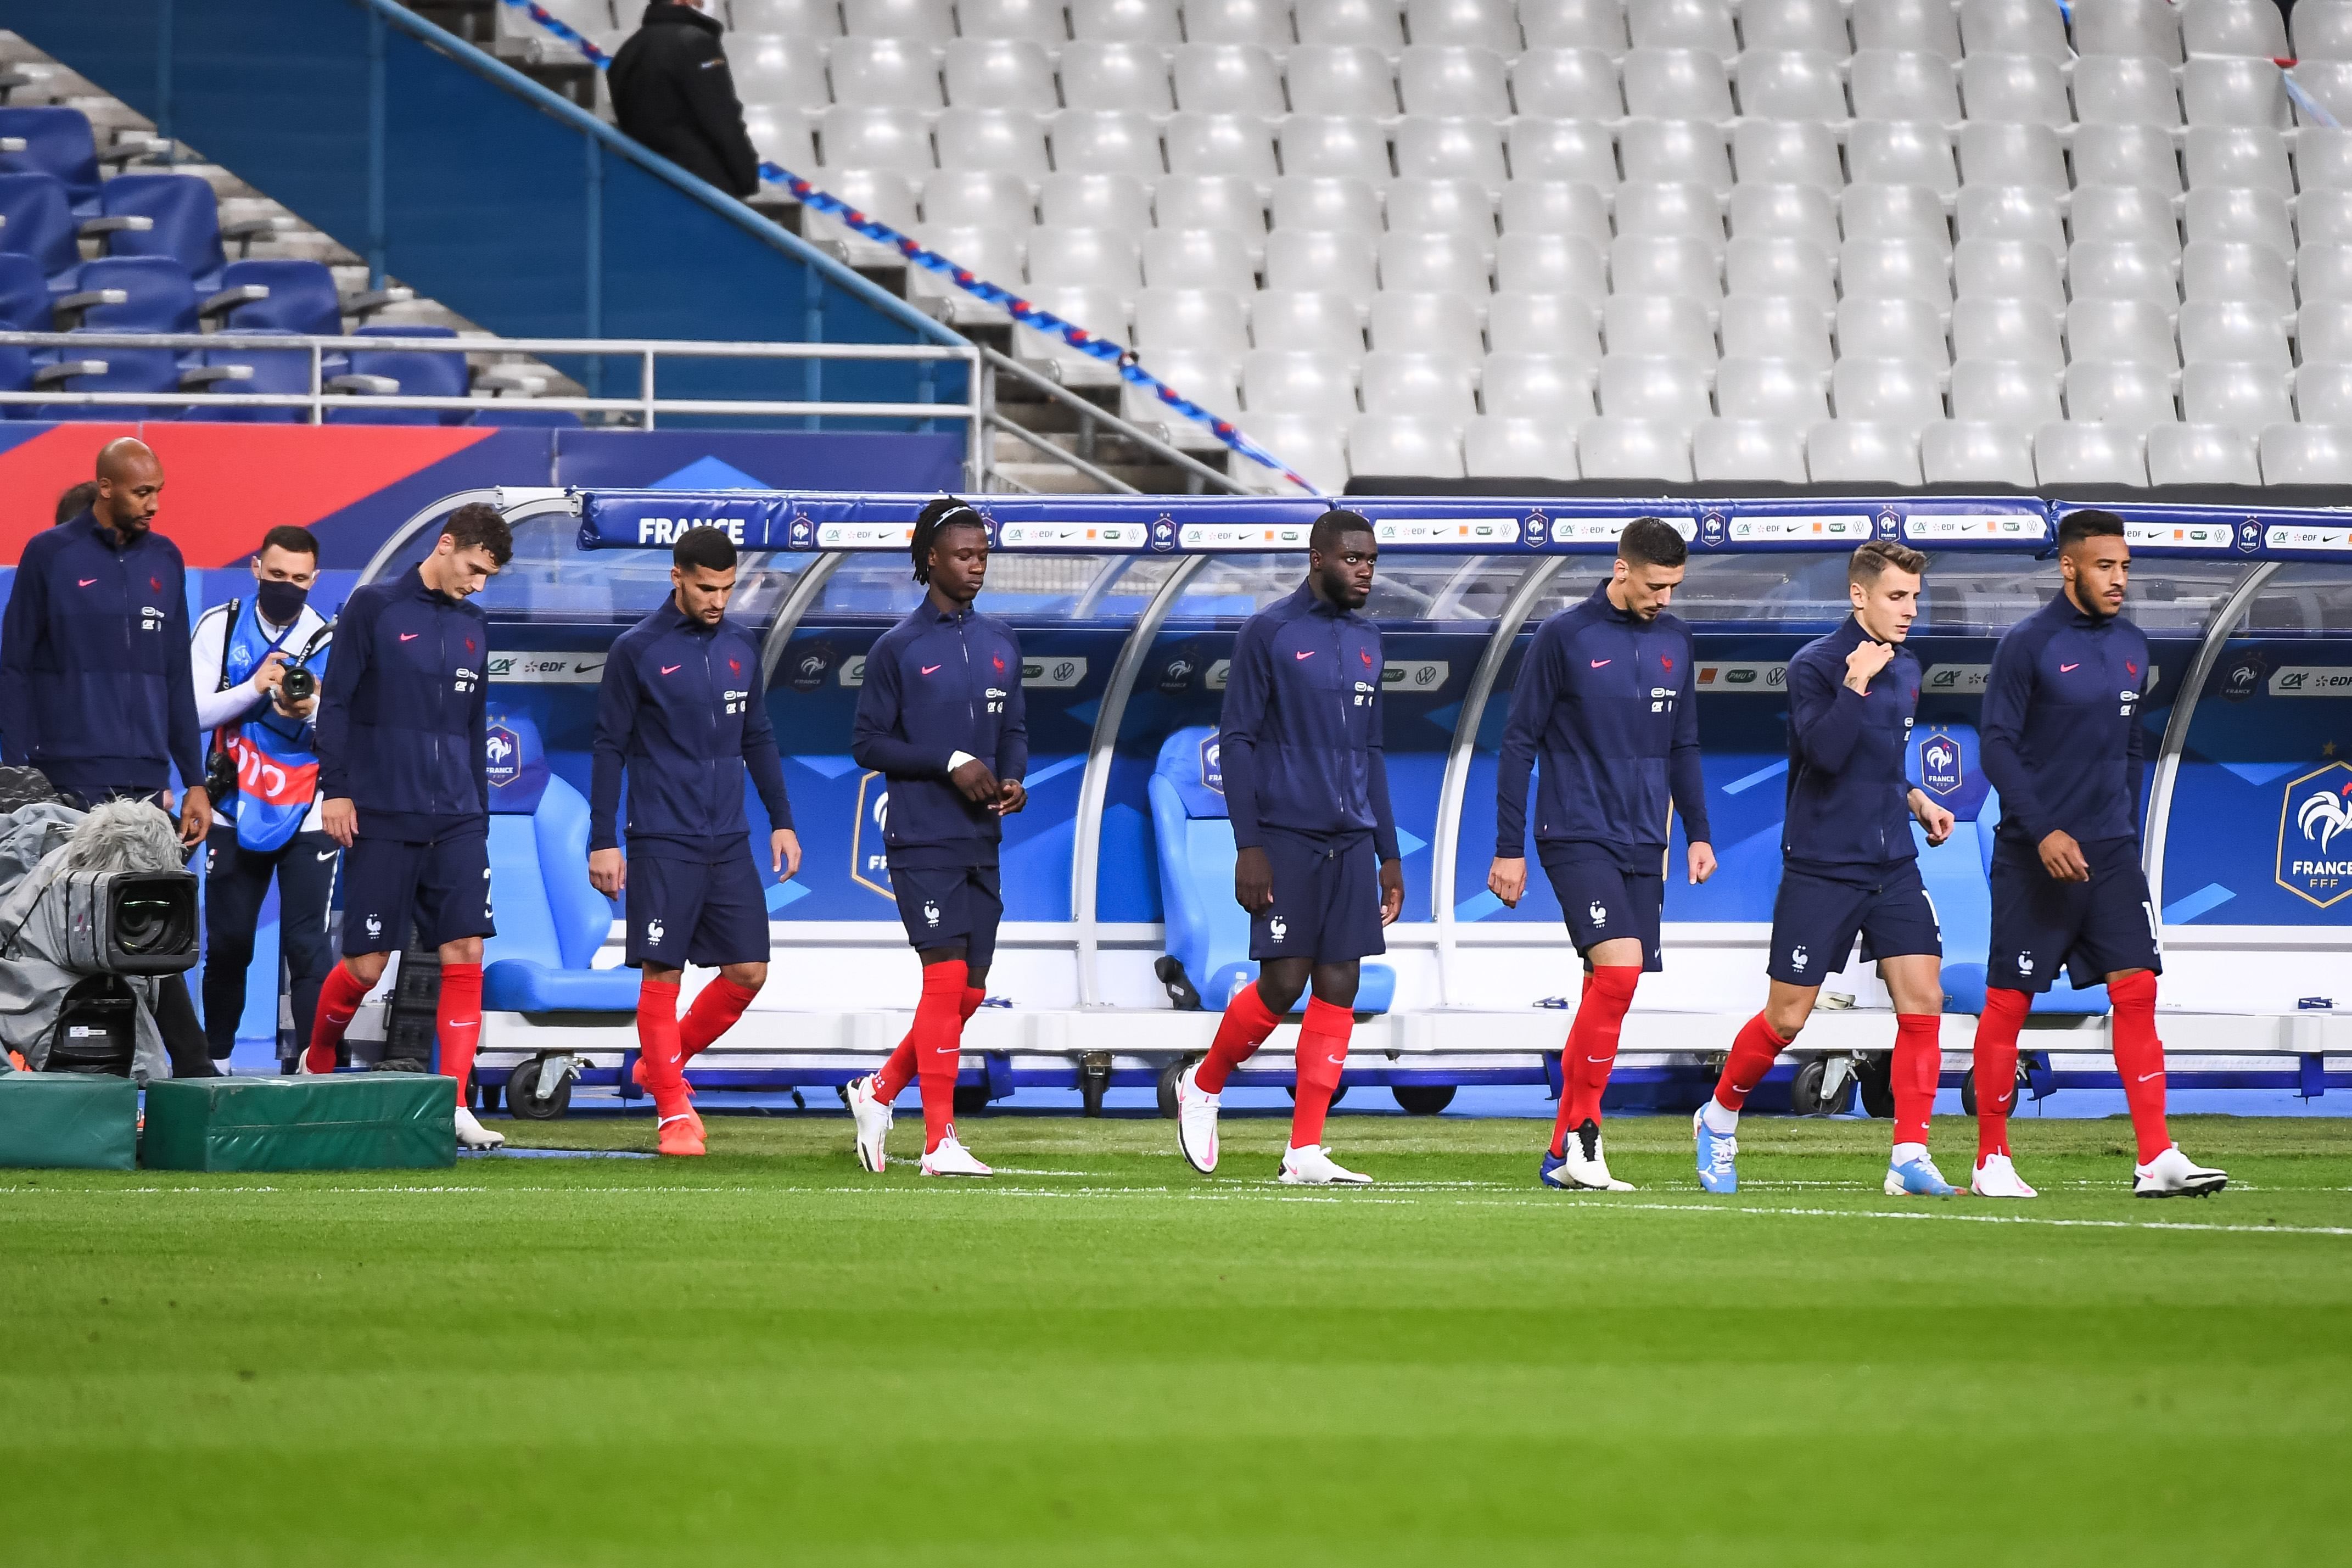 Збірна Франції оприлюднила список гравців – Дешам викликав 26 футболістів